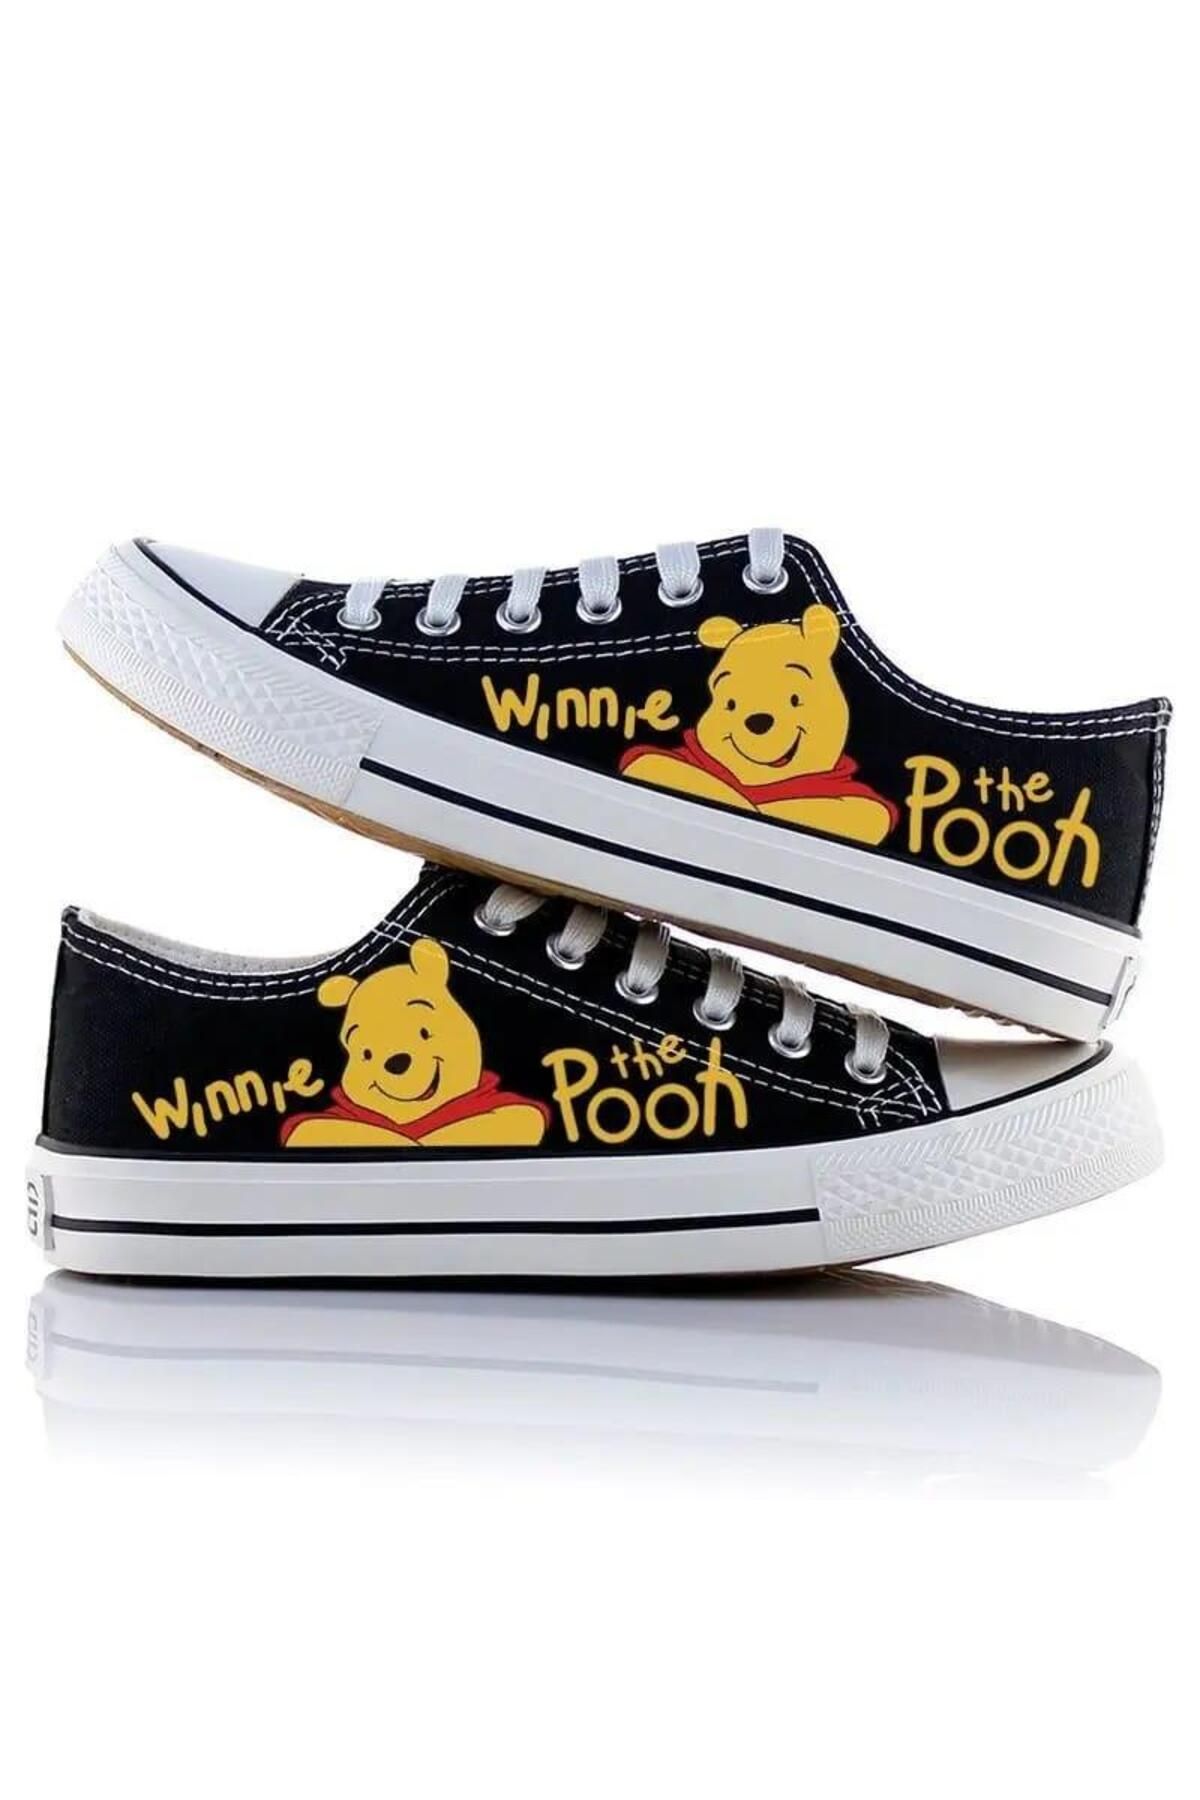 Touz Moda Winnie The Pooh Baskılı Unisex Kanvas Ayakkabı